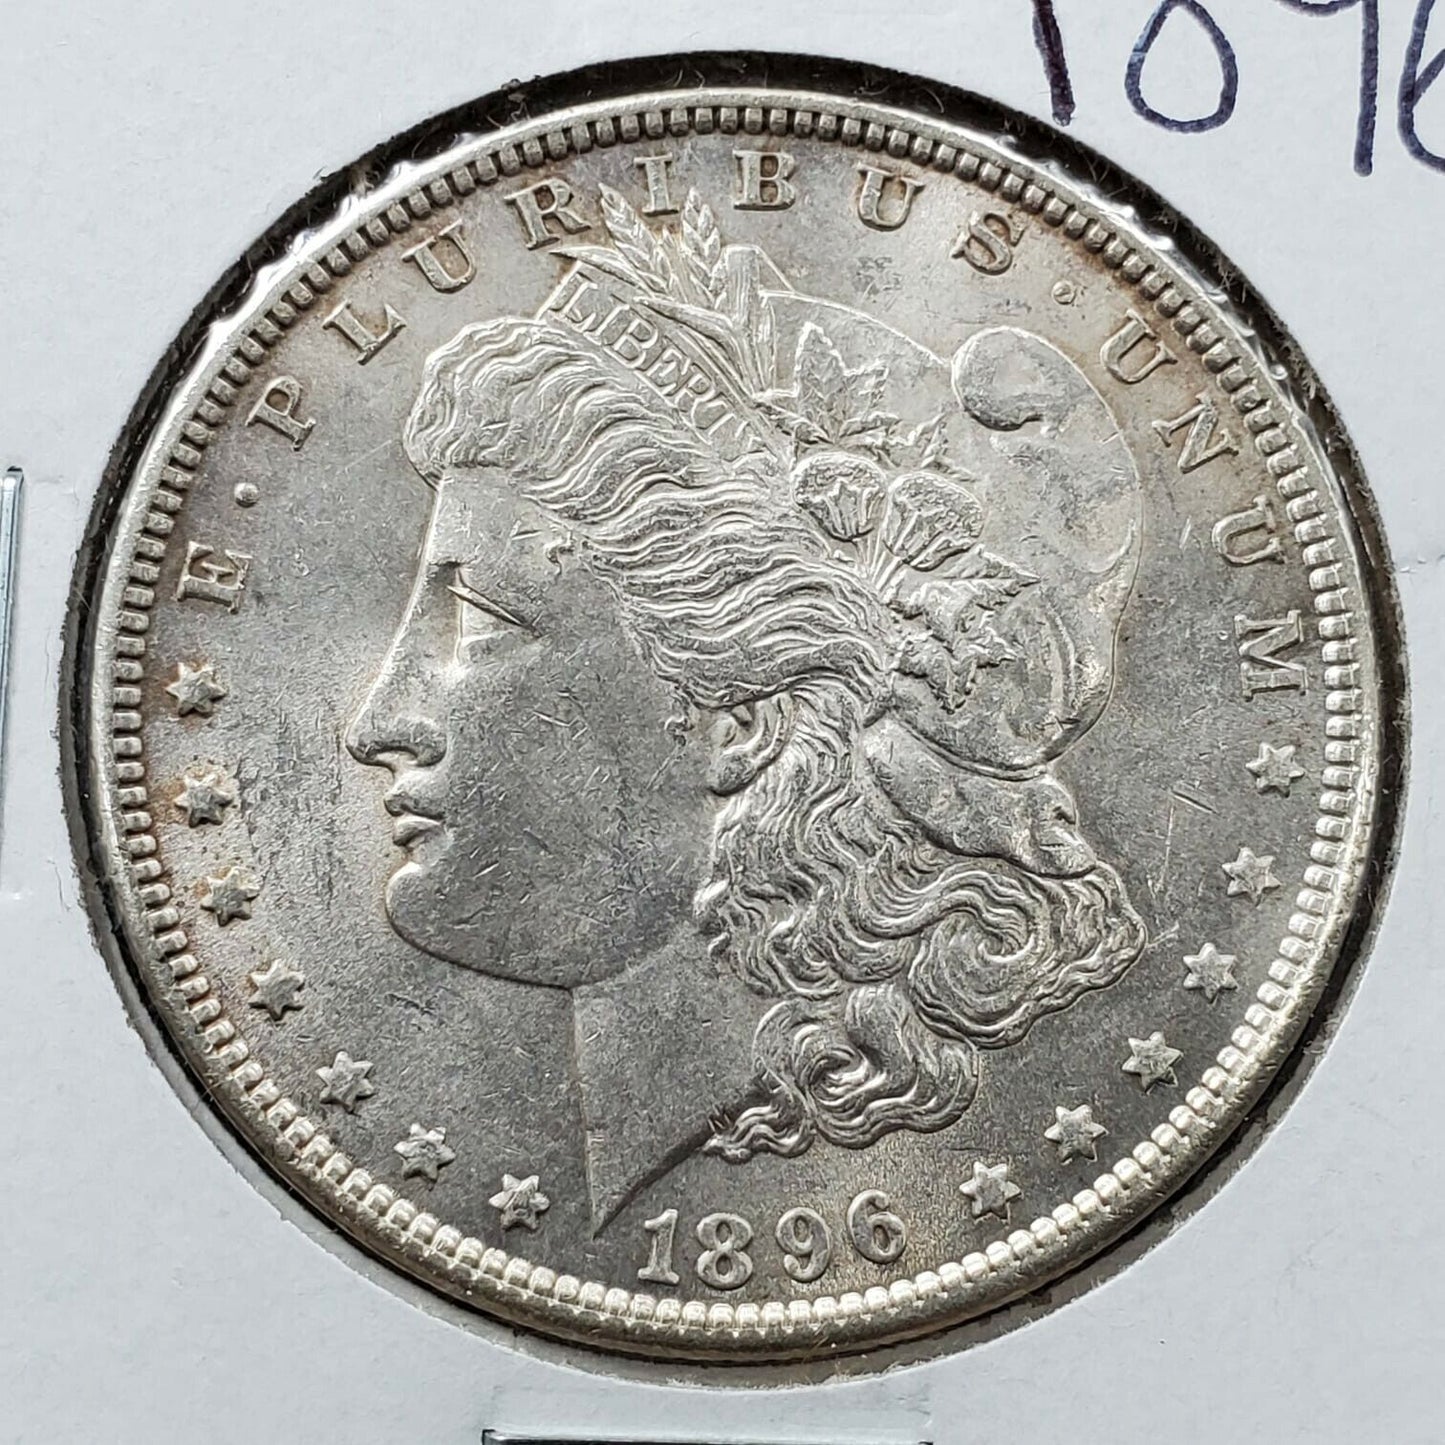 1896 P $1 Morgan Silver Dollar Coin AVG BU UNC Uncirculated Condition Nice Coin